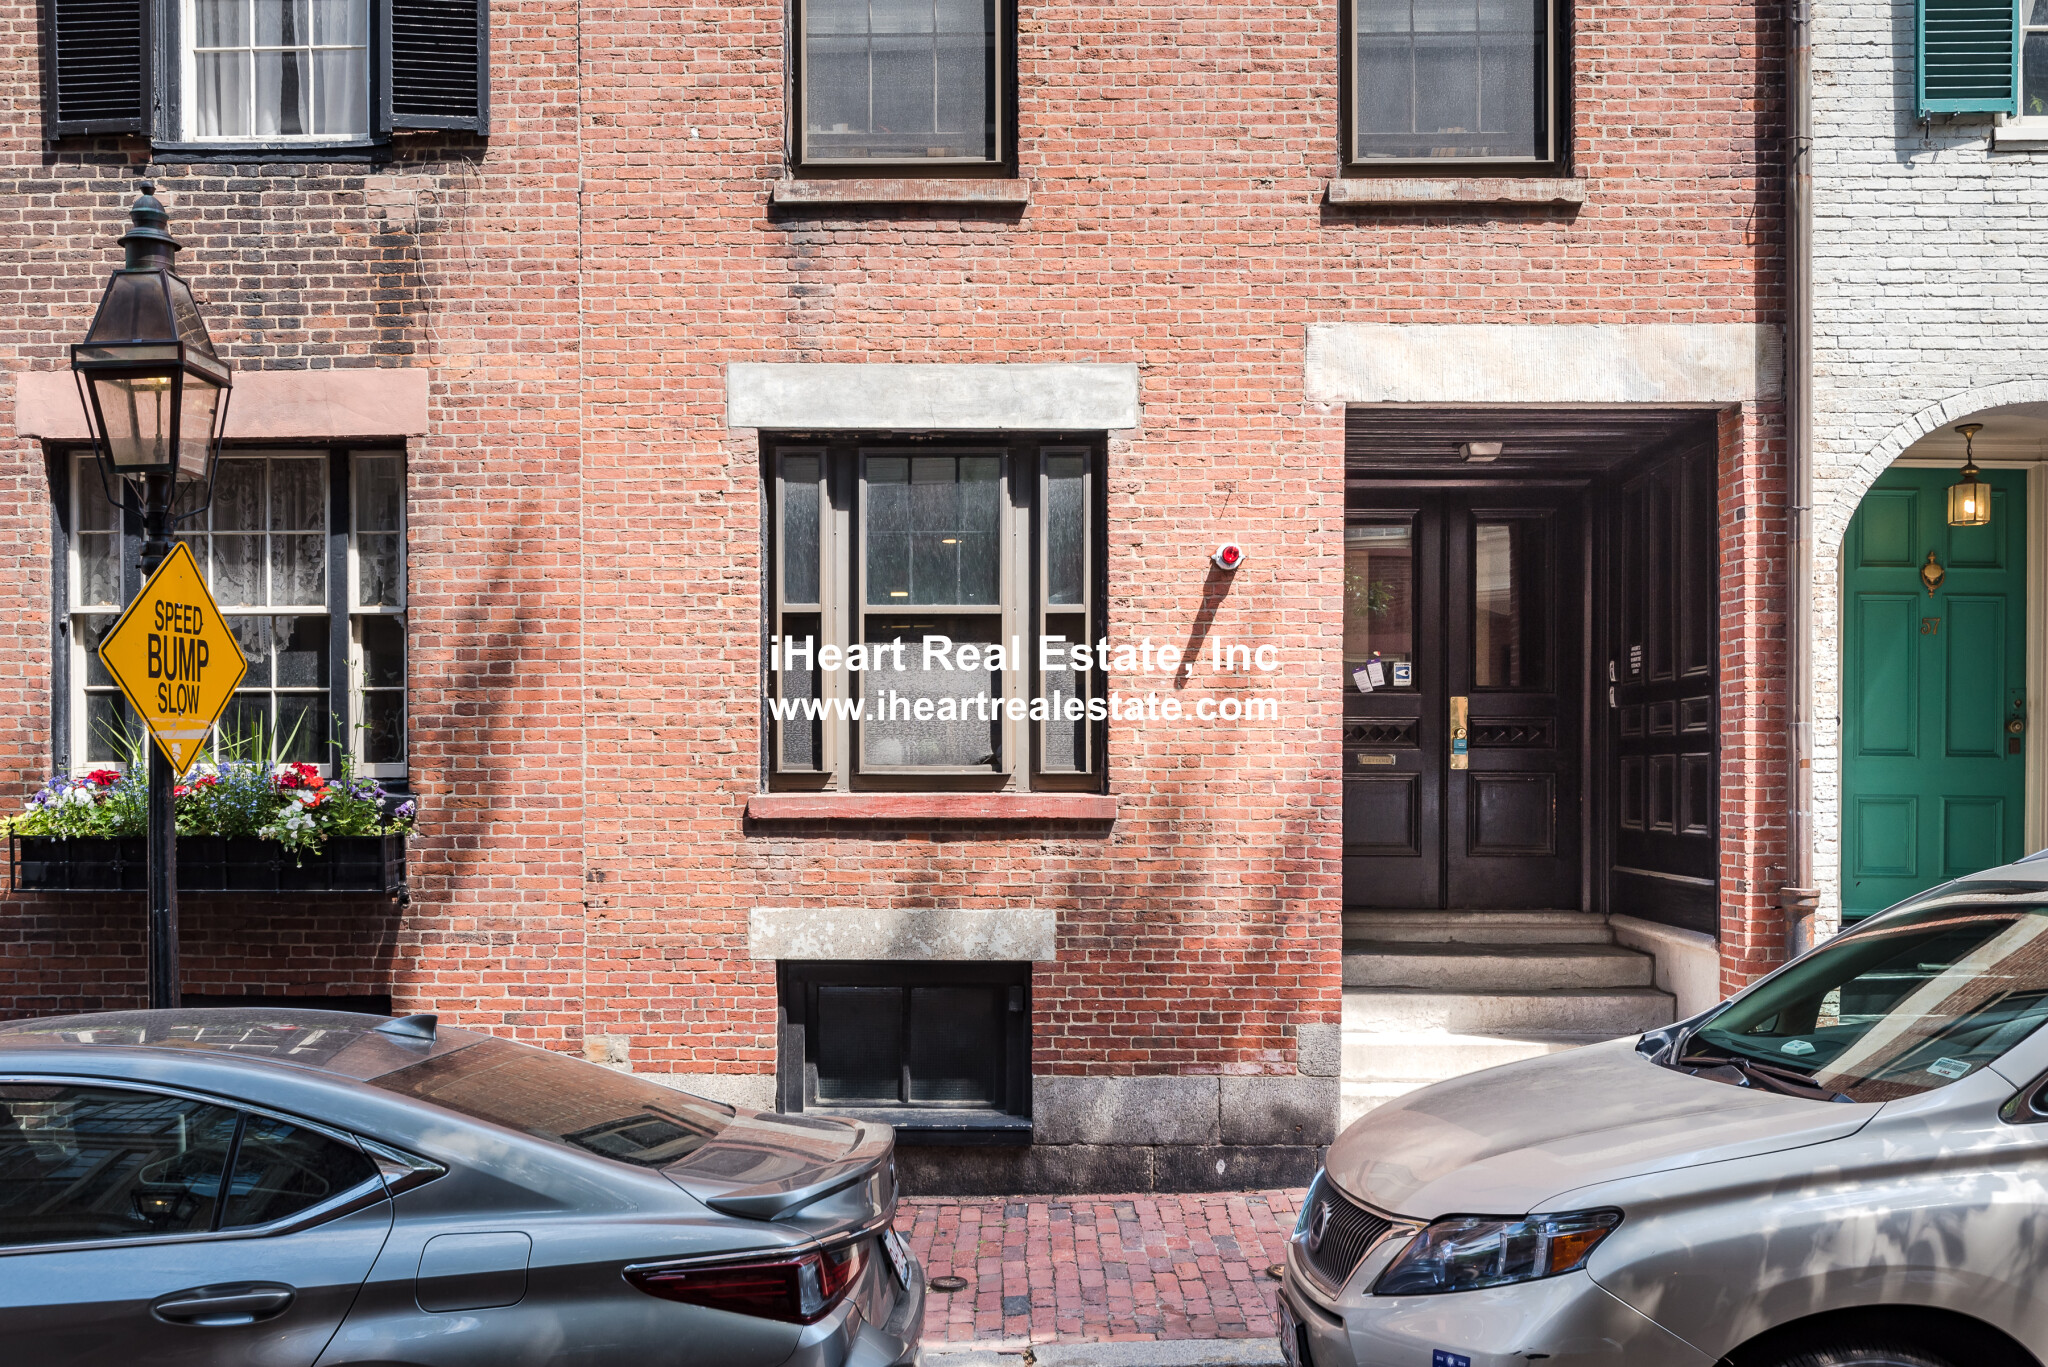 Photos of apartment on Pinckney,Boston MA 02114